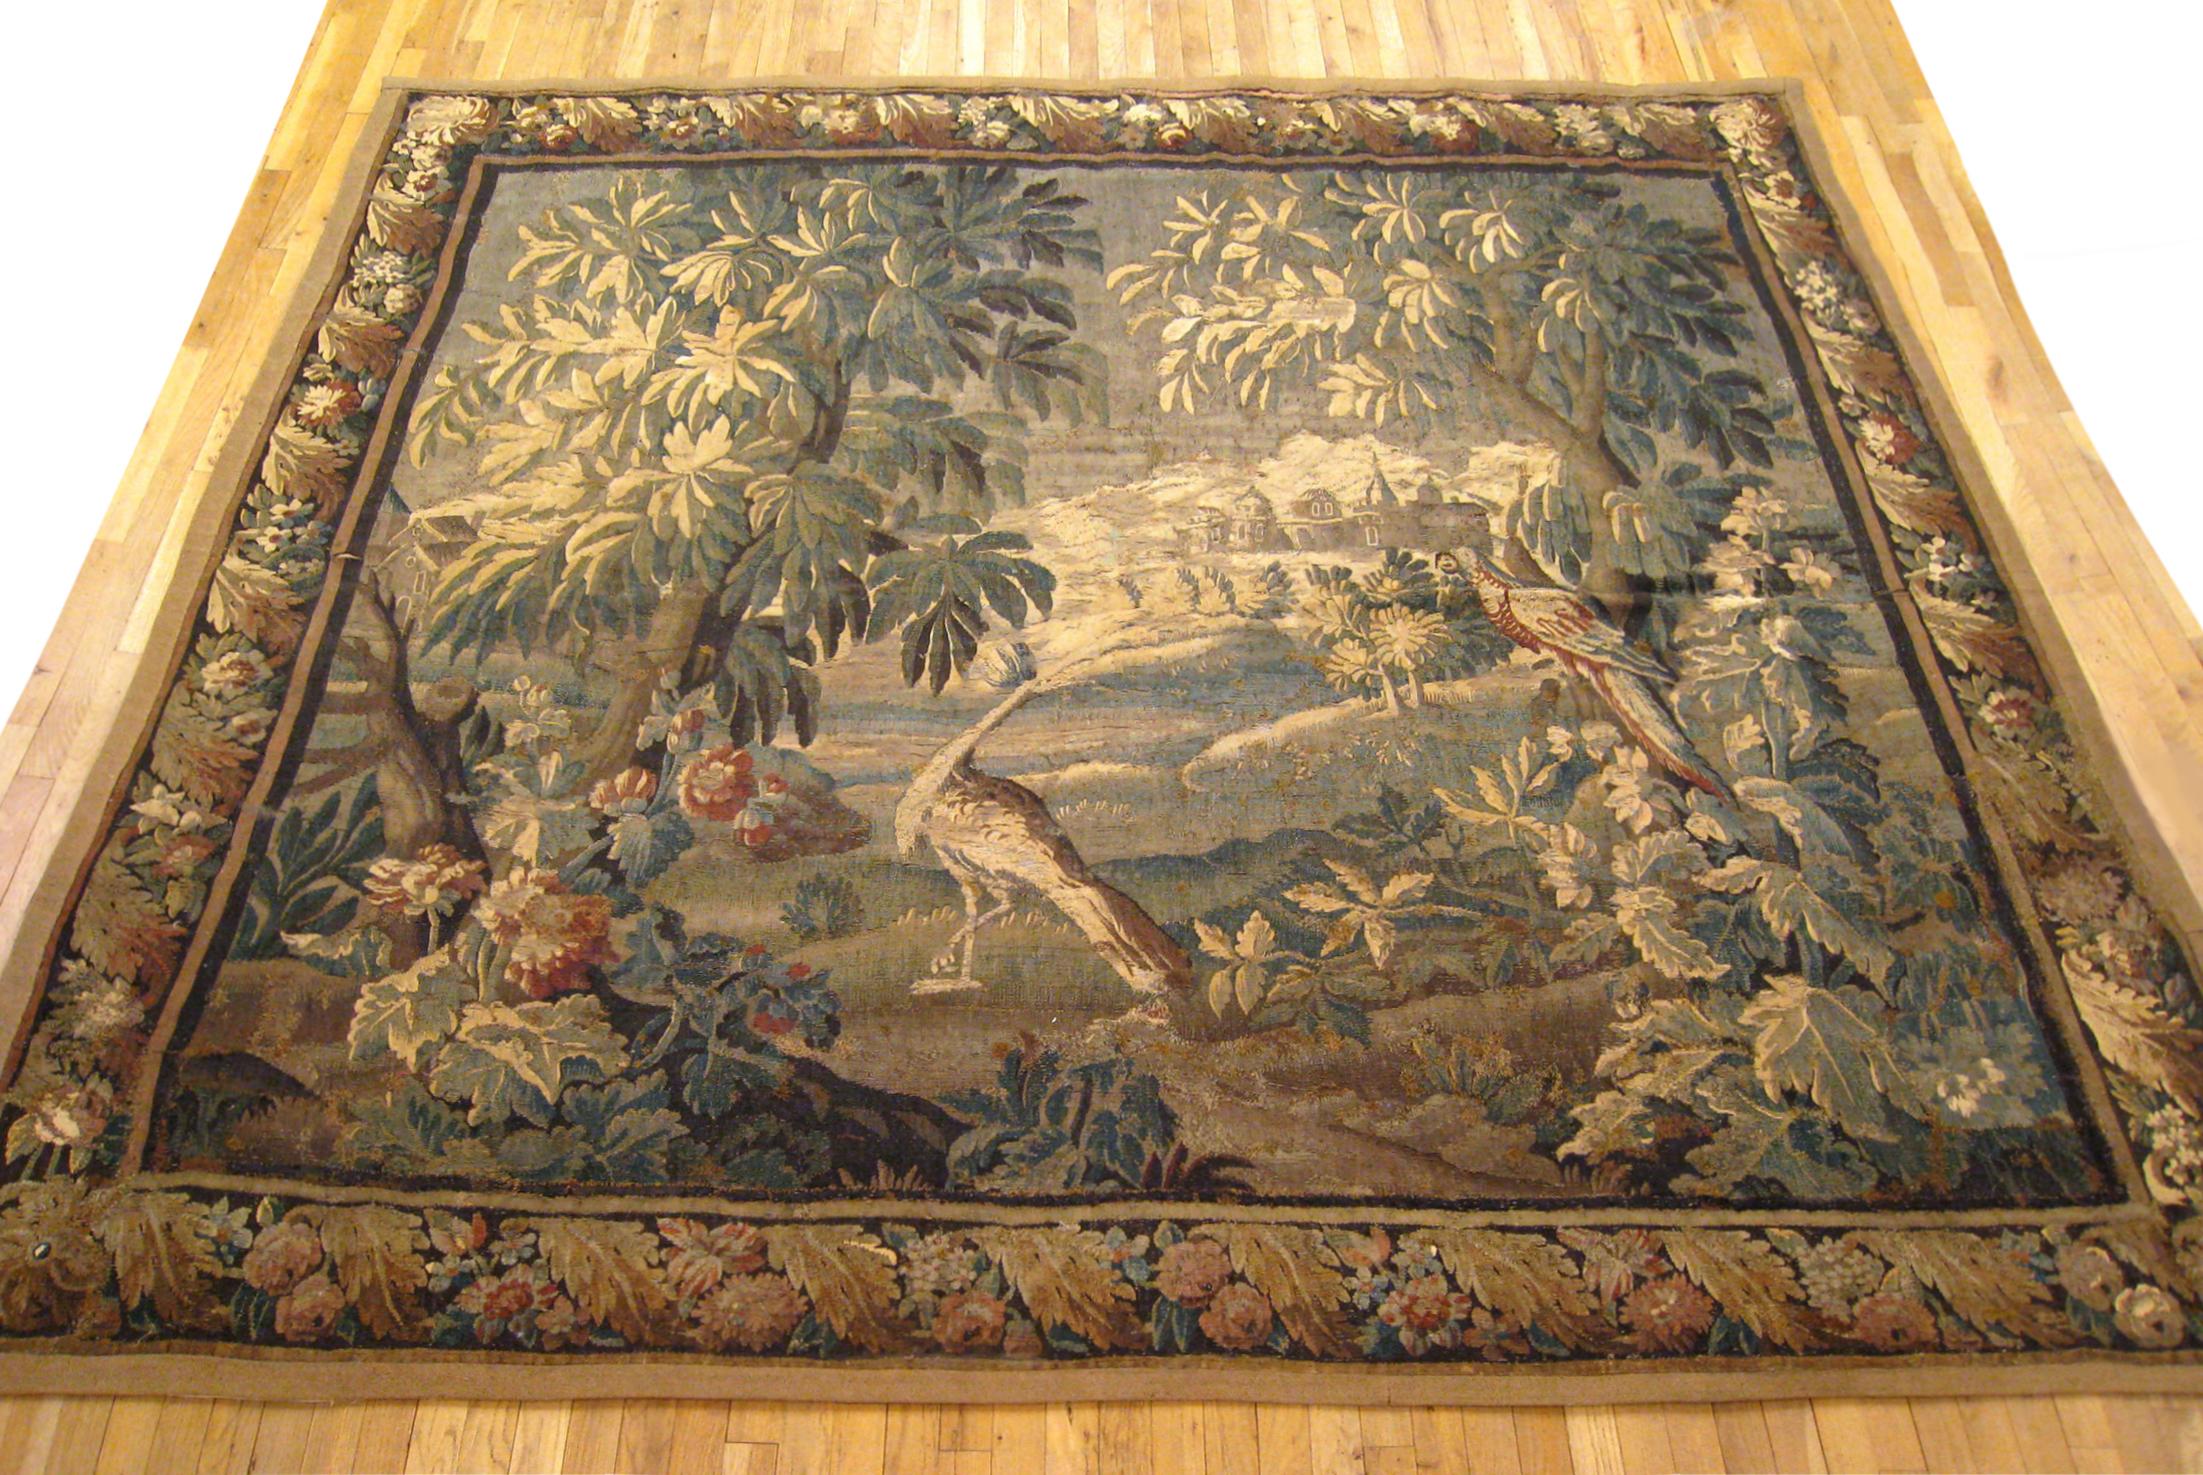 Ancienne tapisserie de paysage en verdure de Felletin du XVIIIe siècle, de dimensions 8'10 H x 9'7 W. Cette tenture murale ancienne tissée à la main représente deux oiseaux exotiques au centre, au milieu de verdure, d'arbres, de fleurs et de plantes